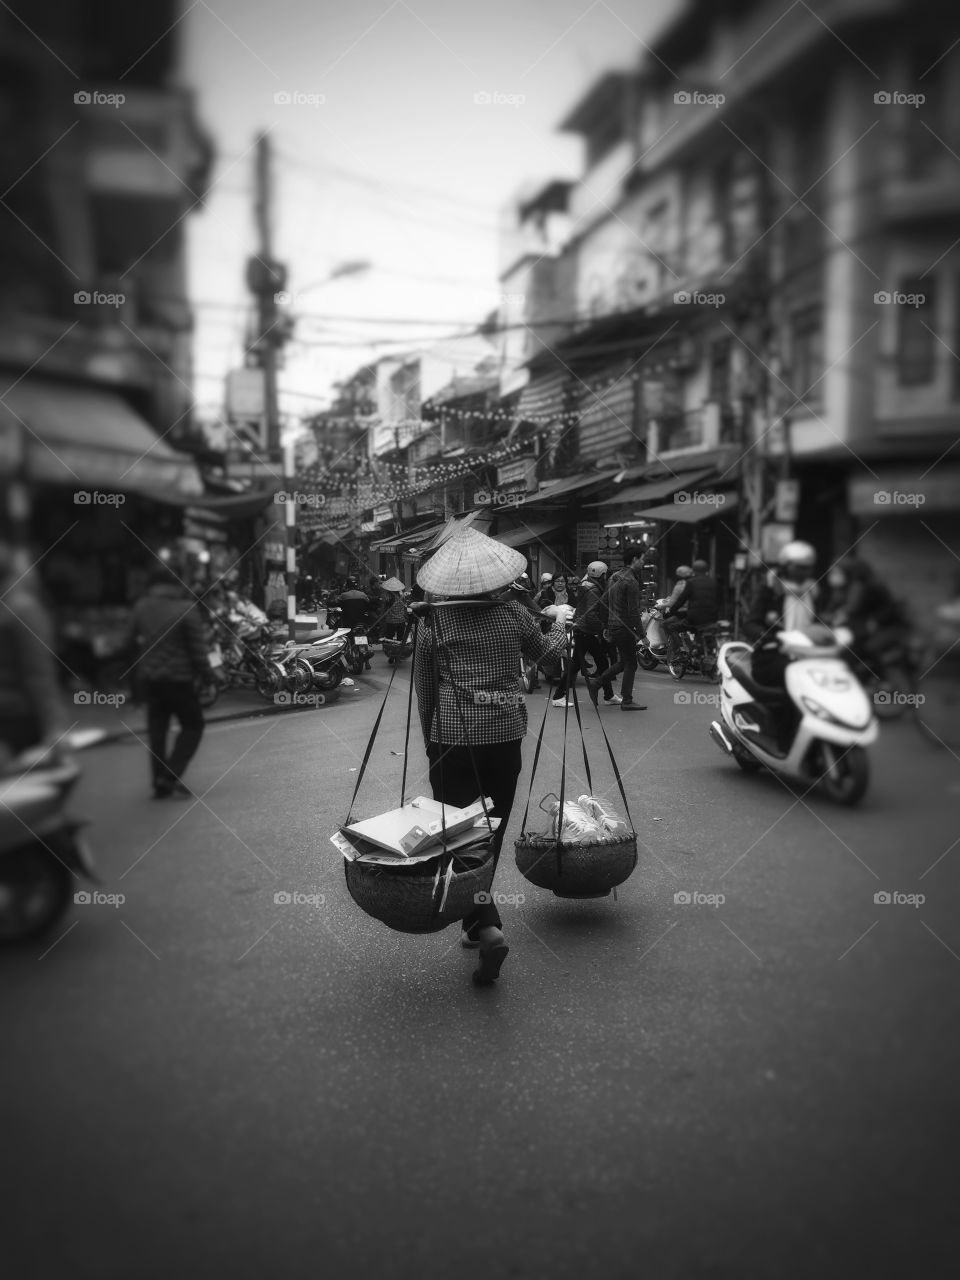 Vietnamese women street view